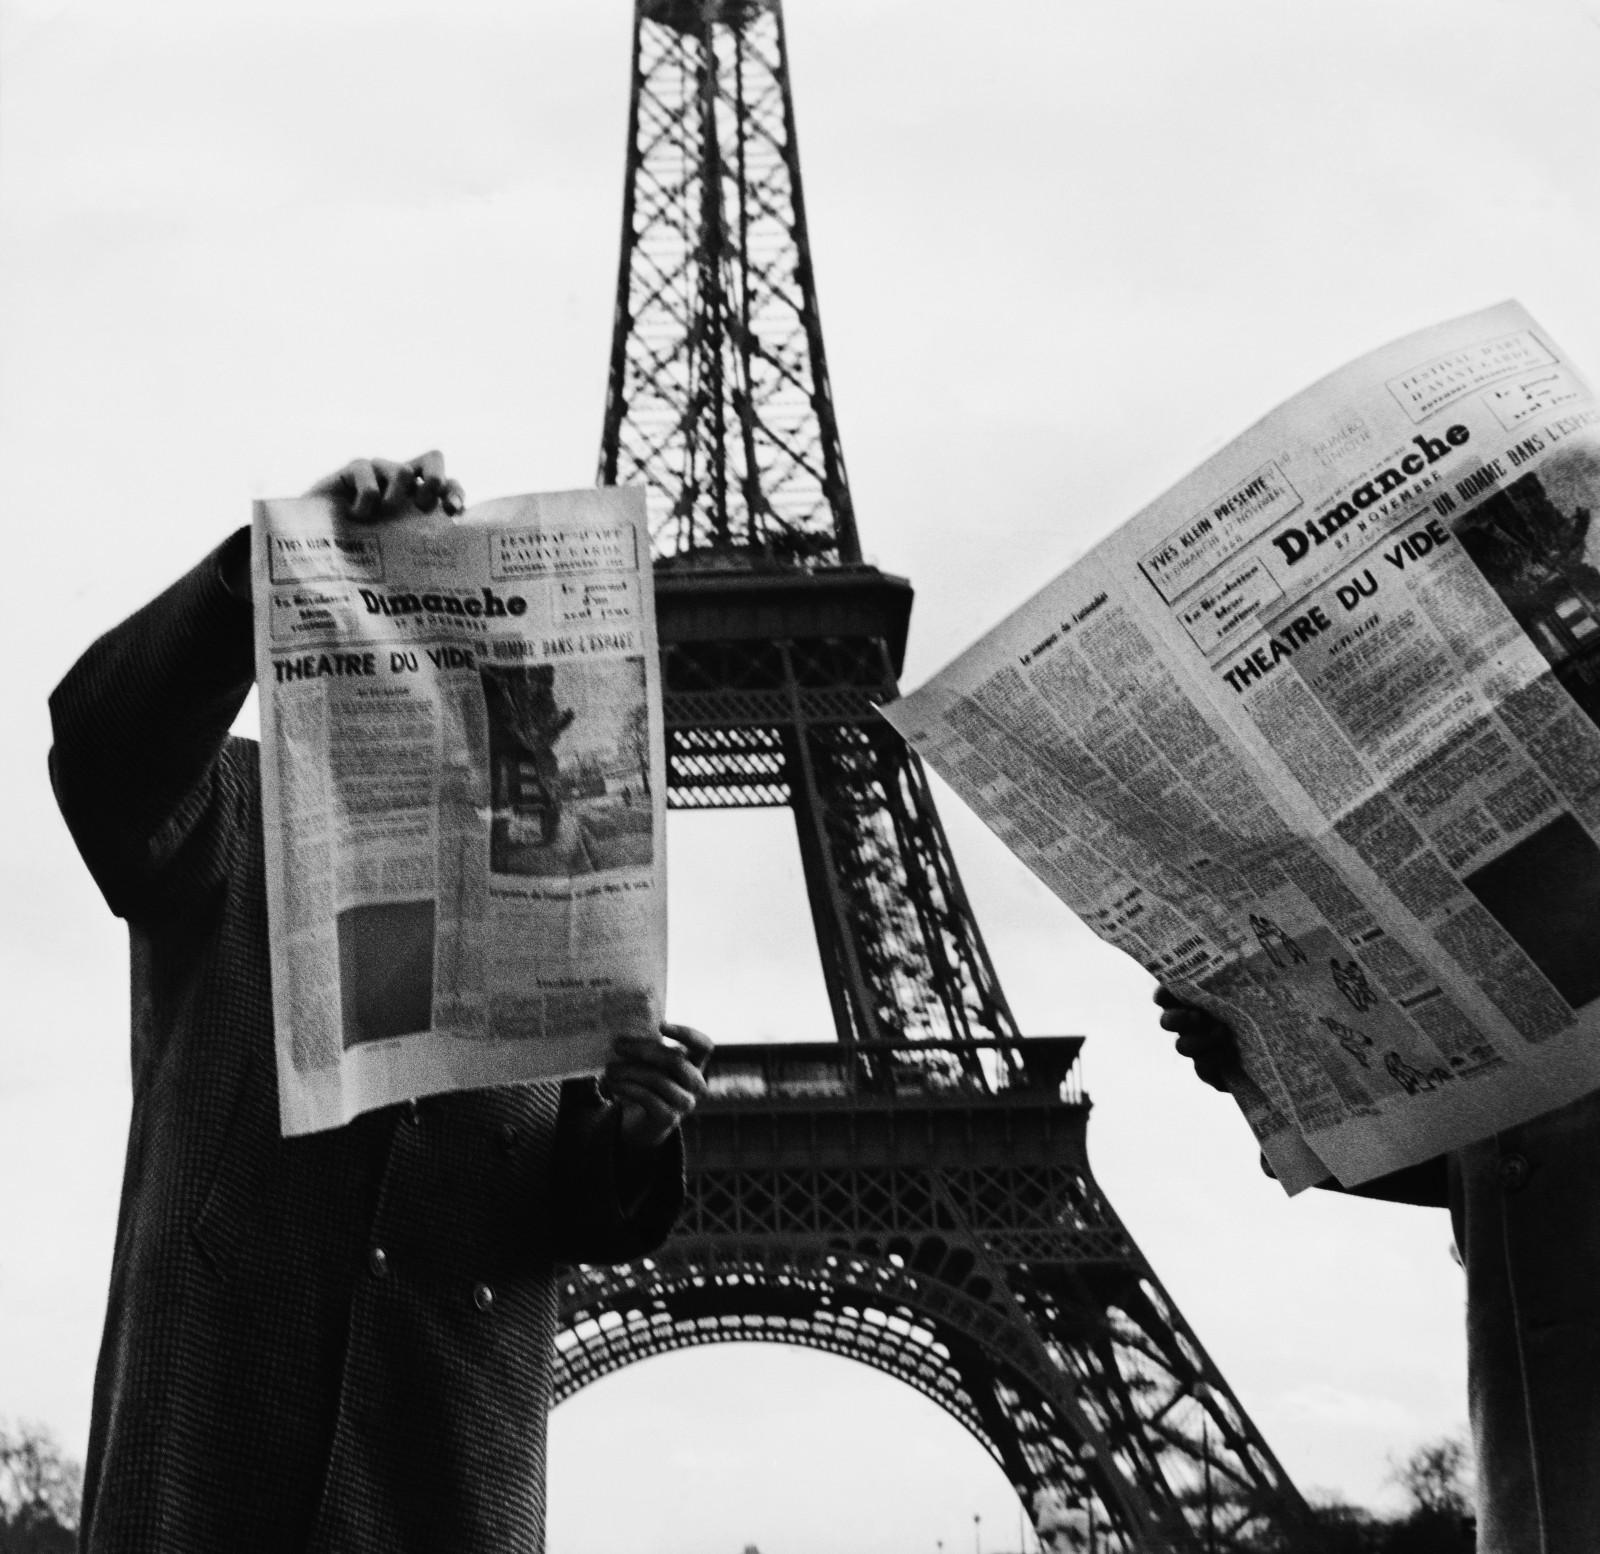 Publication de "Dimanche 27 novembre, le journal d'un seul jour", manifestation artistique d'Yves Klein dans le cadre du Festival d'Art d'Avant-Garde